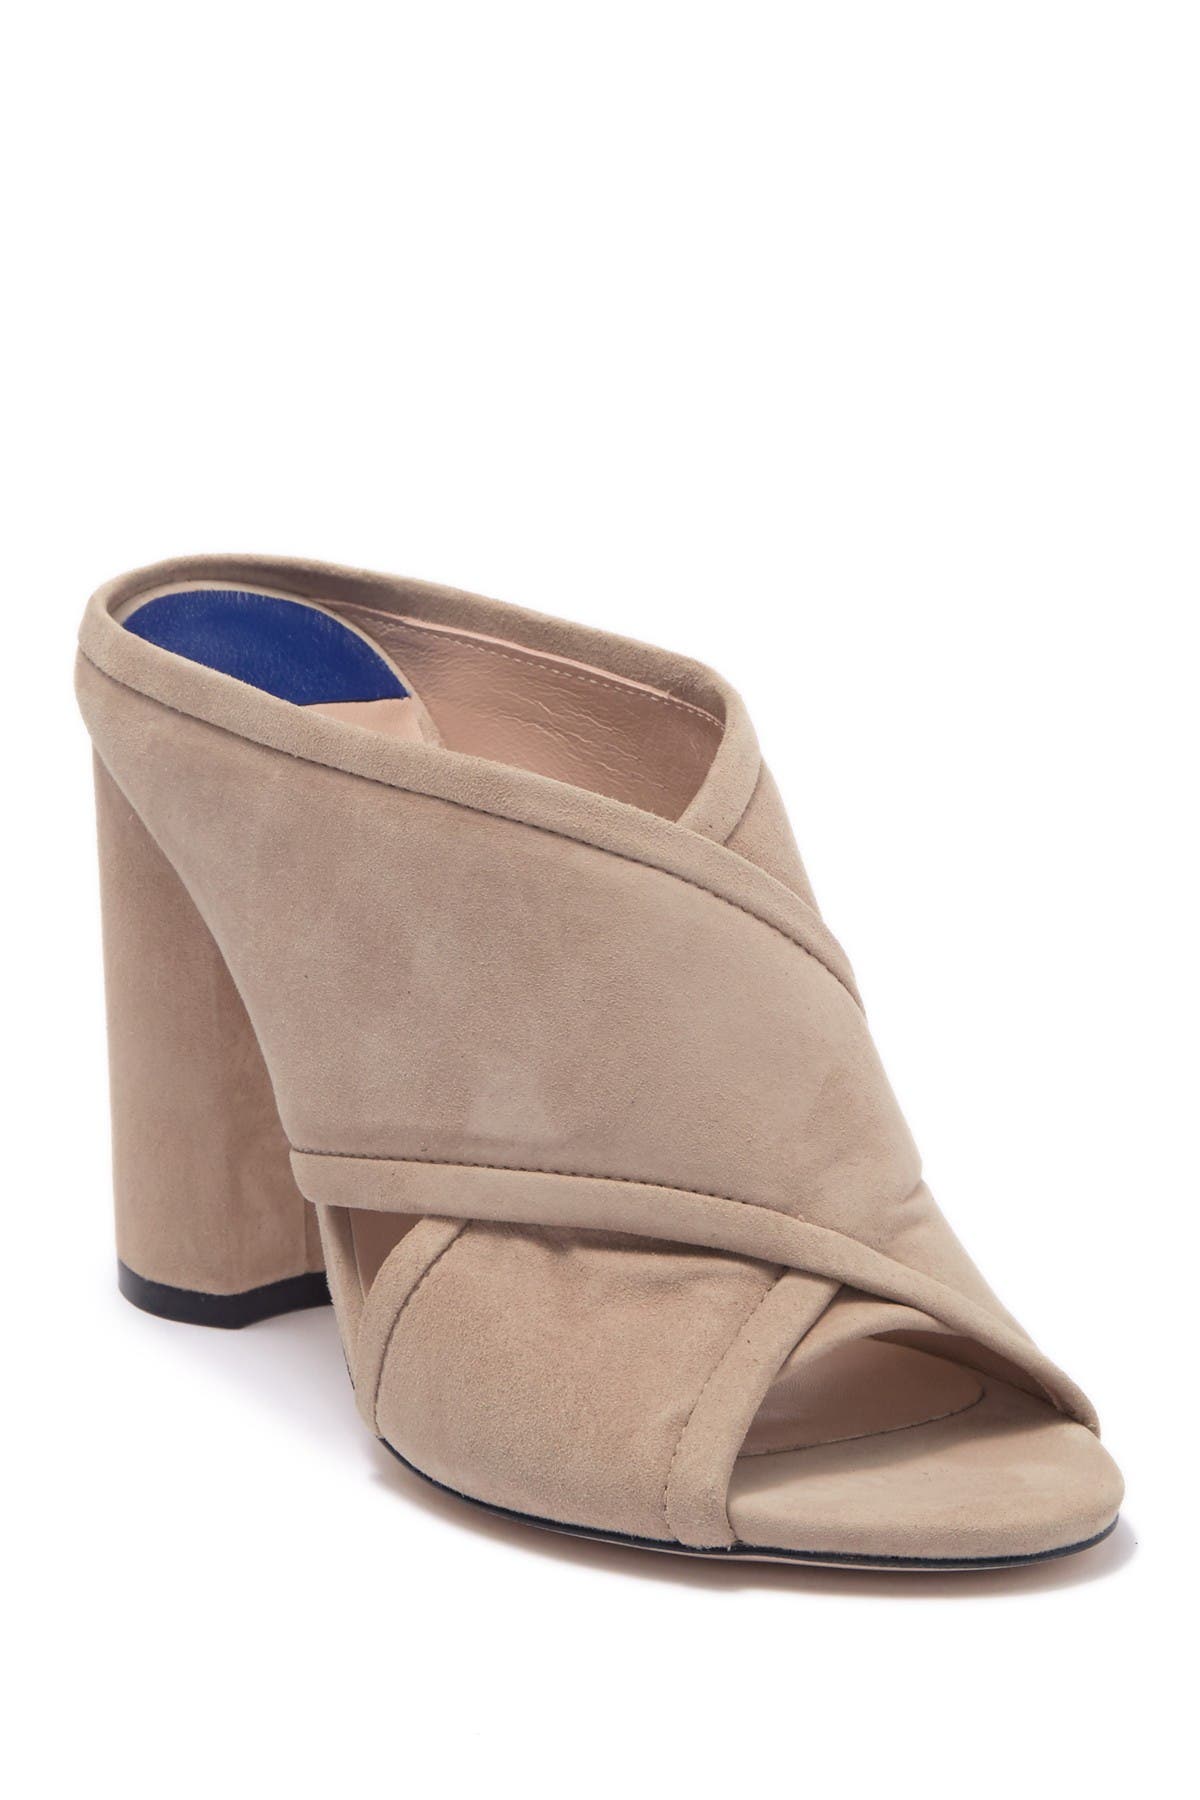 mule sandal block heel